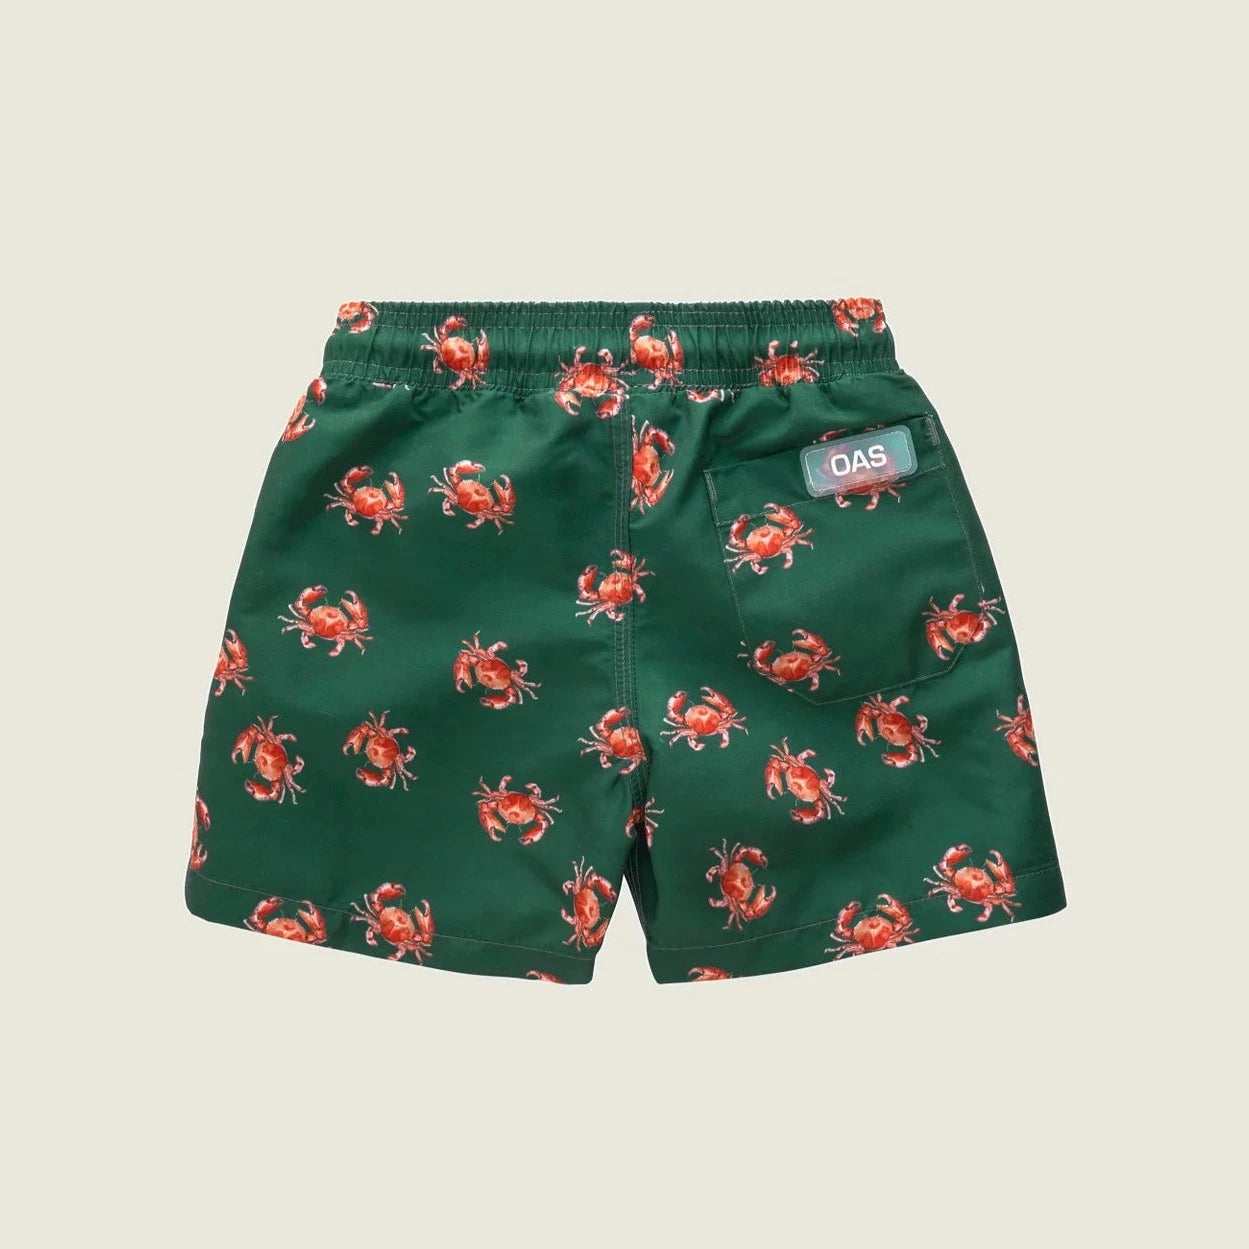 Oas - Crab Swim Shorts